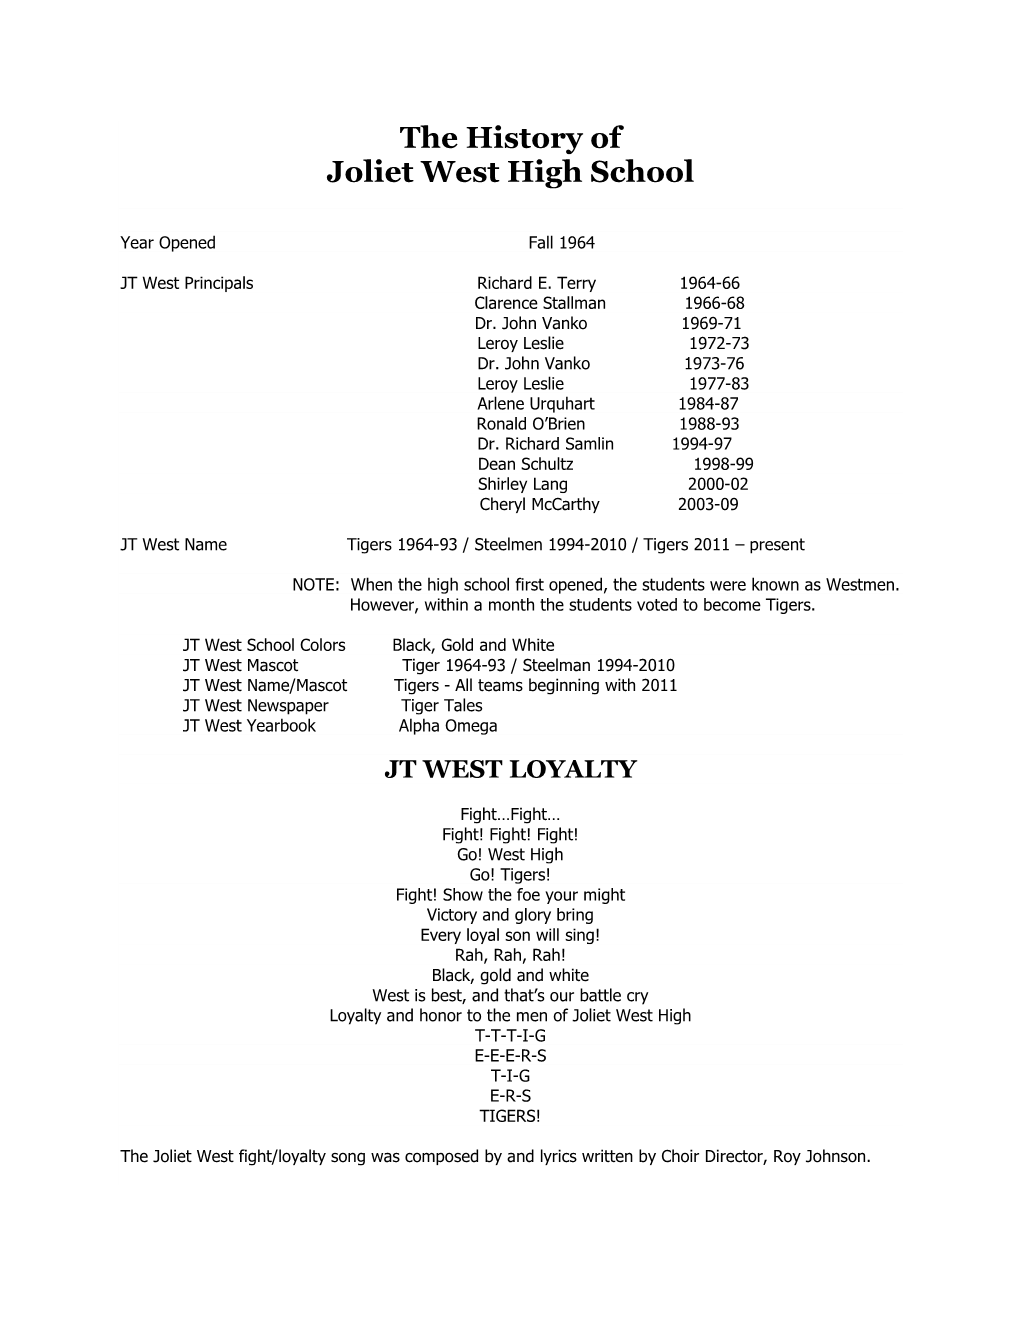 The History of Joliet West High School